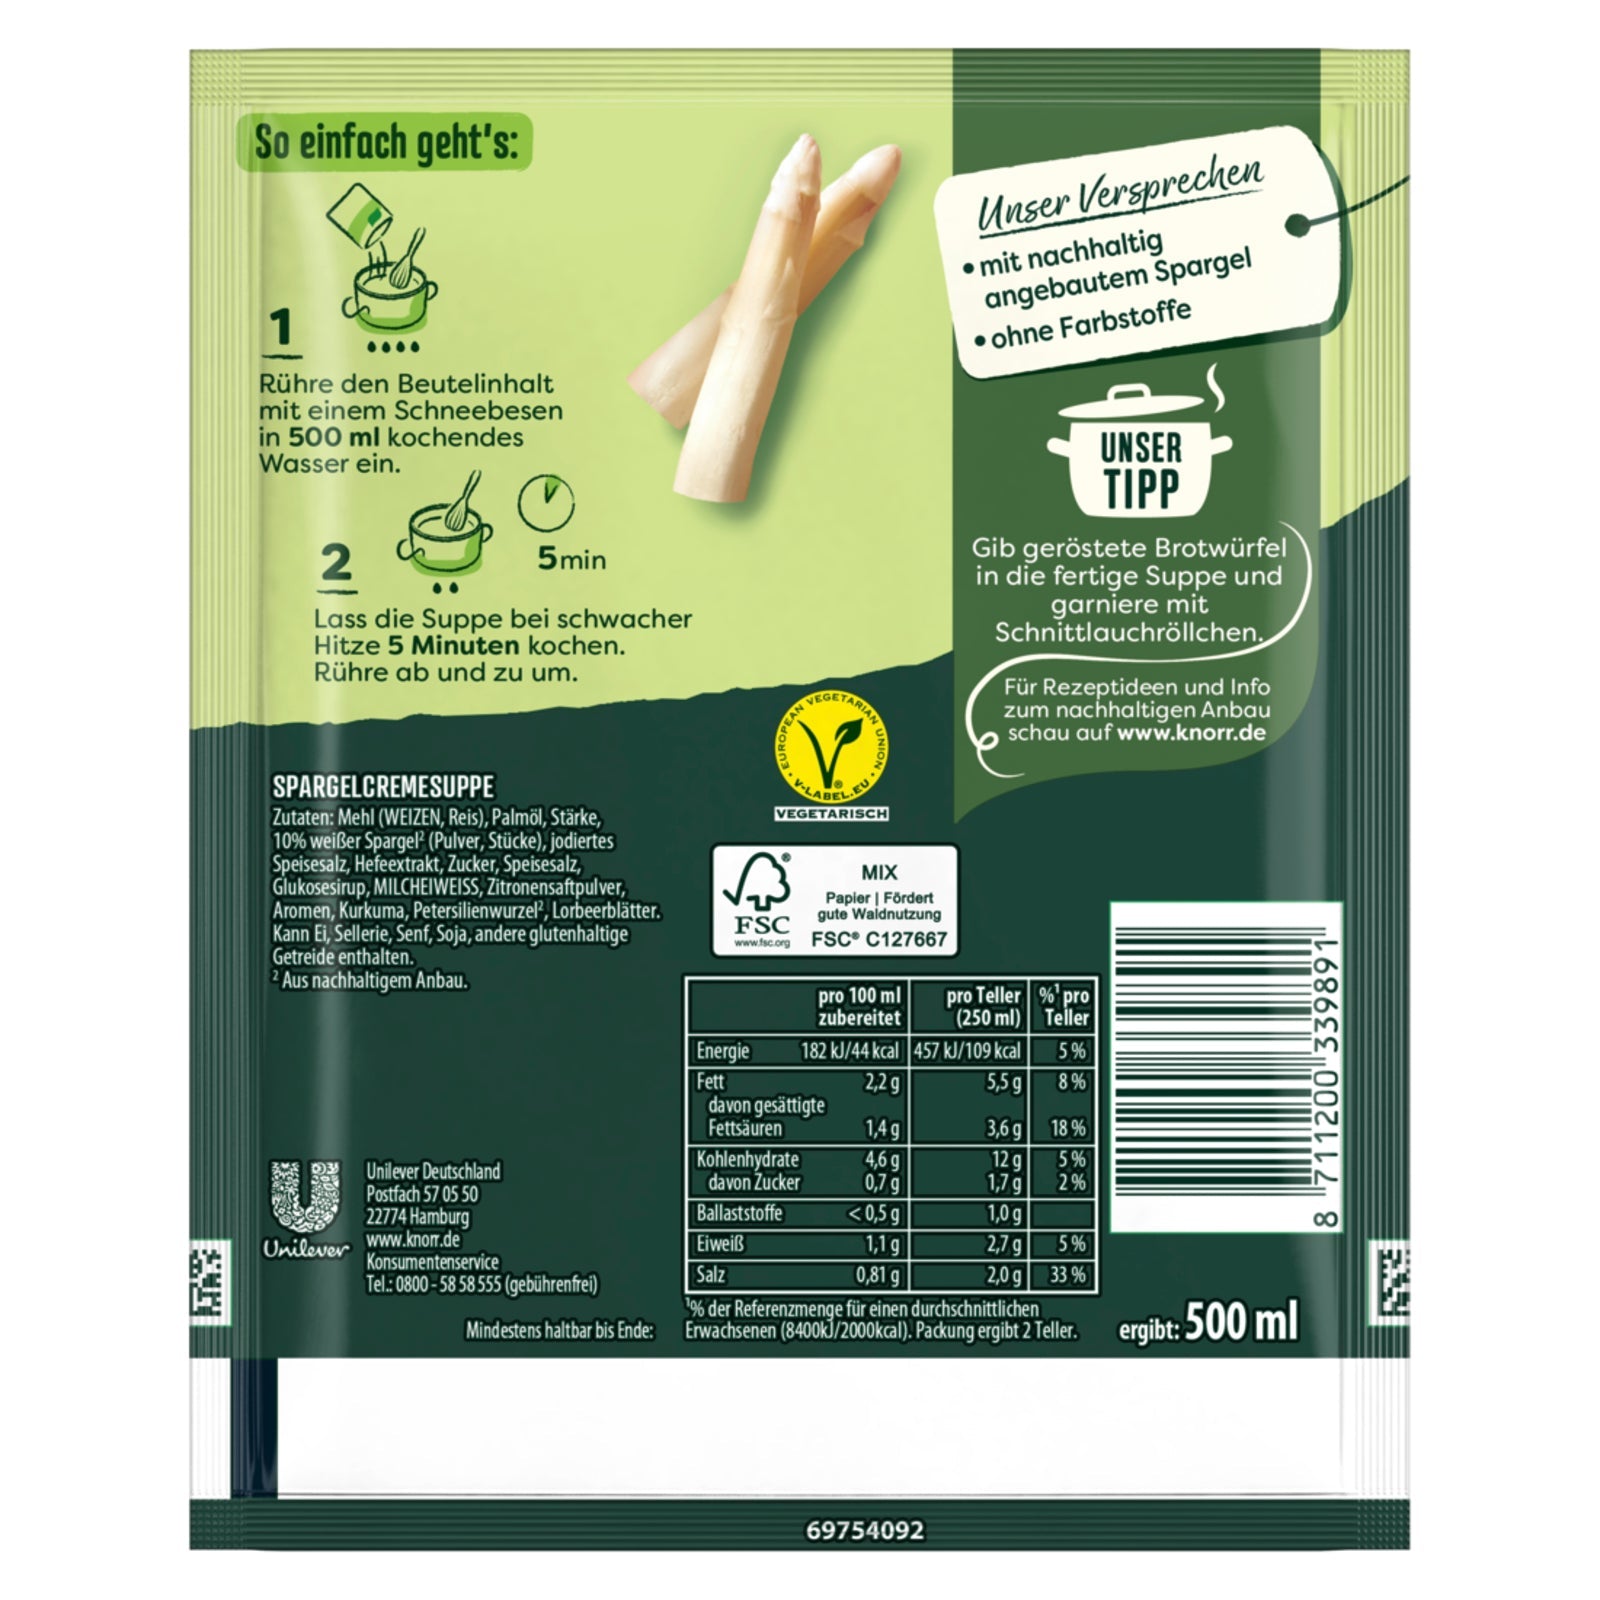 Knorr Feinschmecker Spargel Cremesuppe: besonders cremige Spargelsuppe aus weißem Spargel